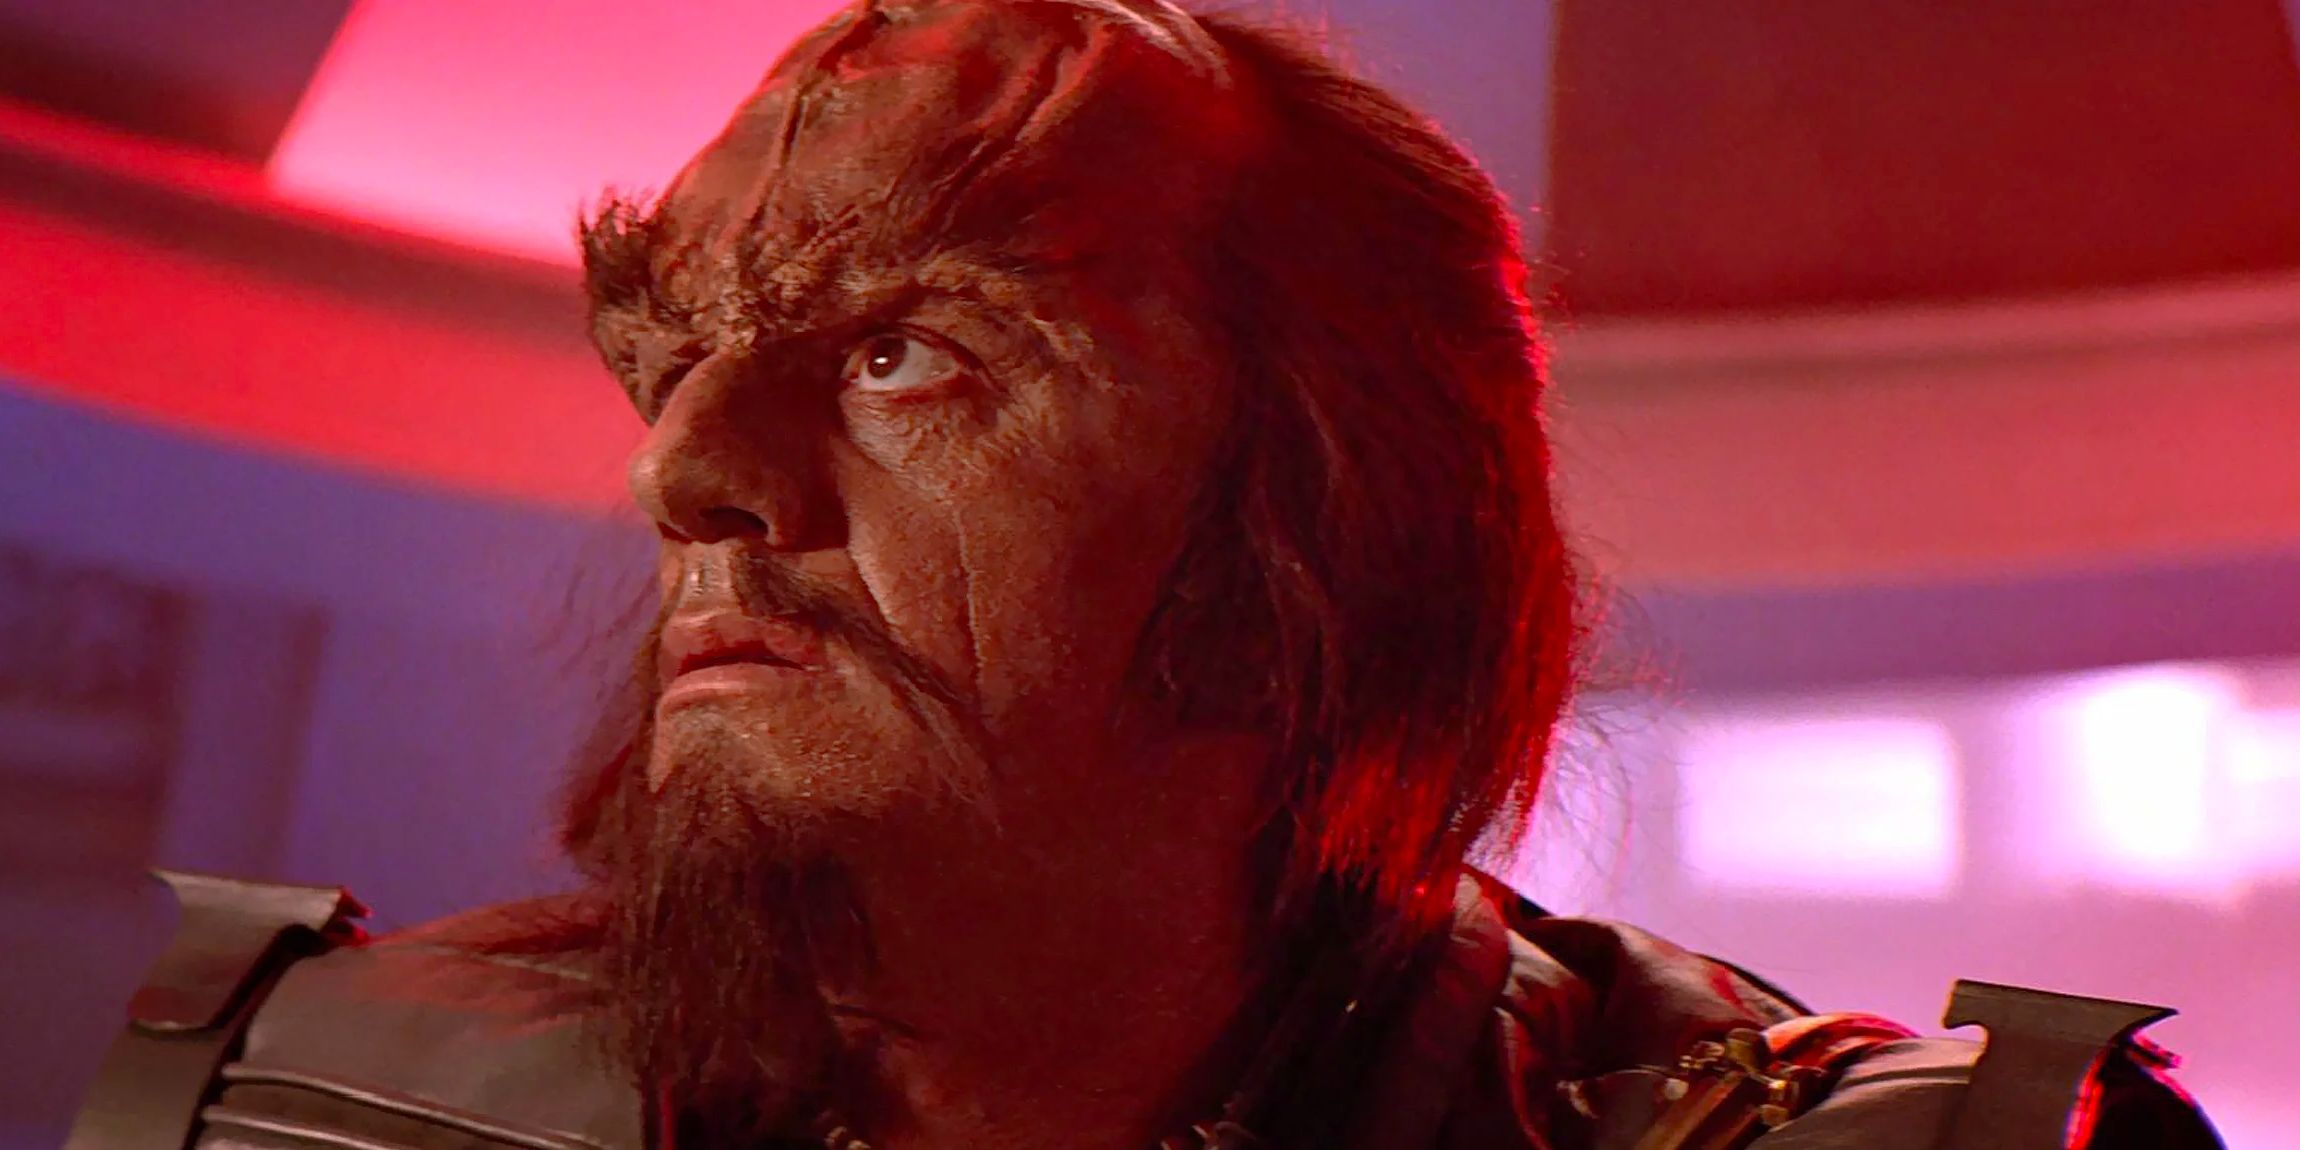 Kruge (Christopher Lloyd), a Klingon mercenary, stands aboard a ship adorned in red light. 